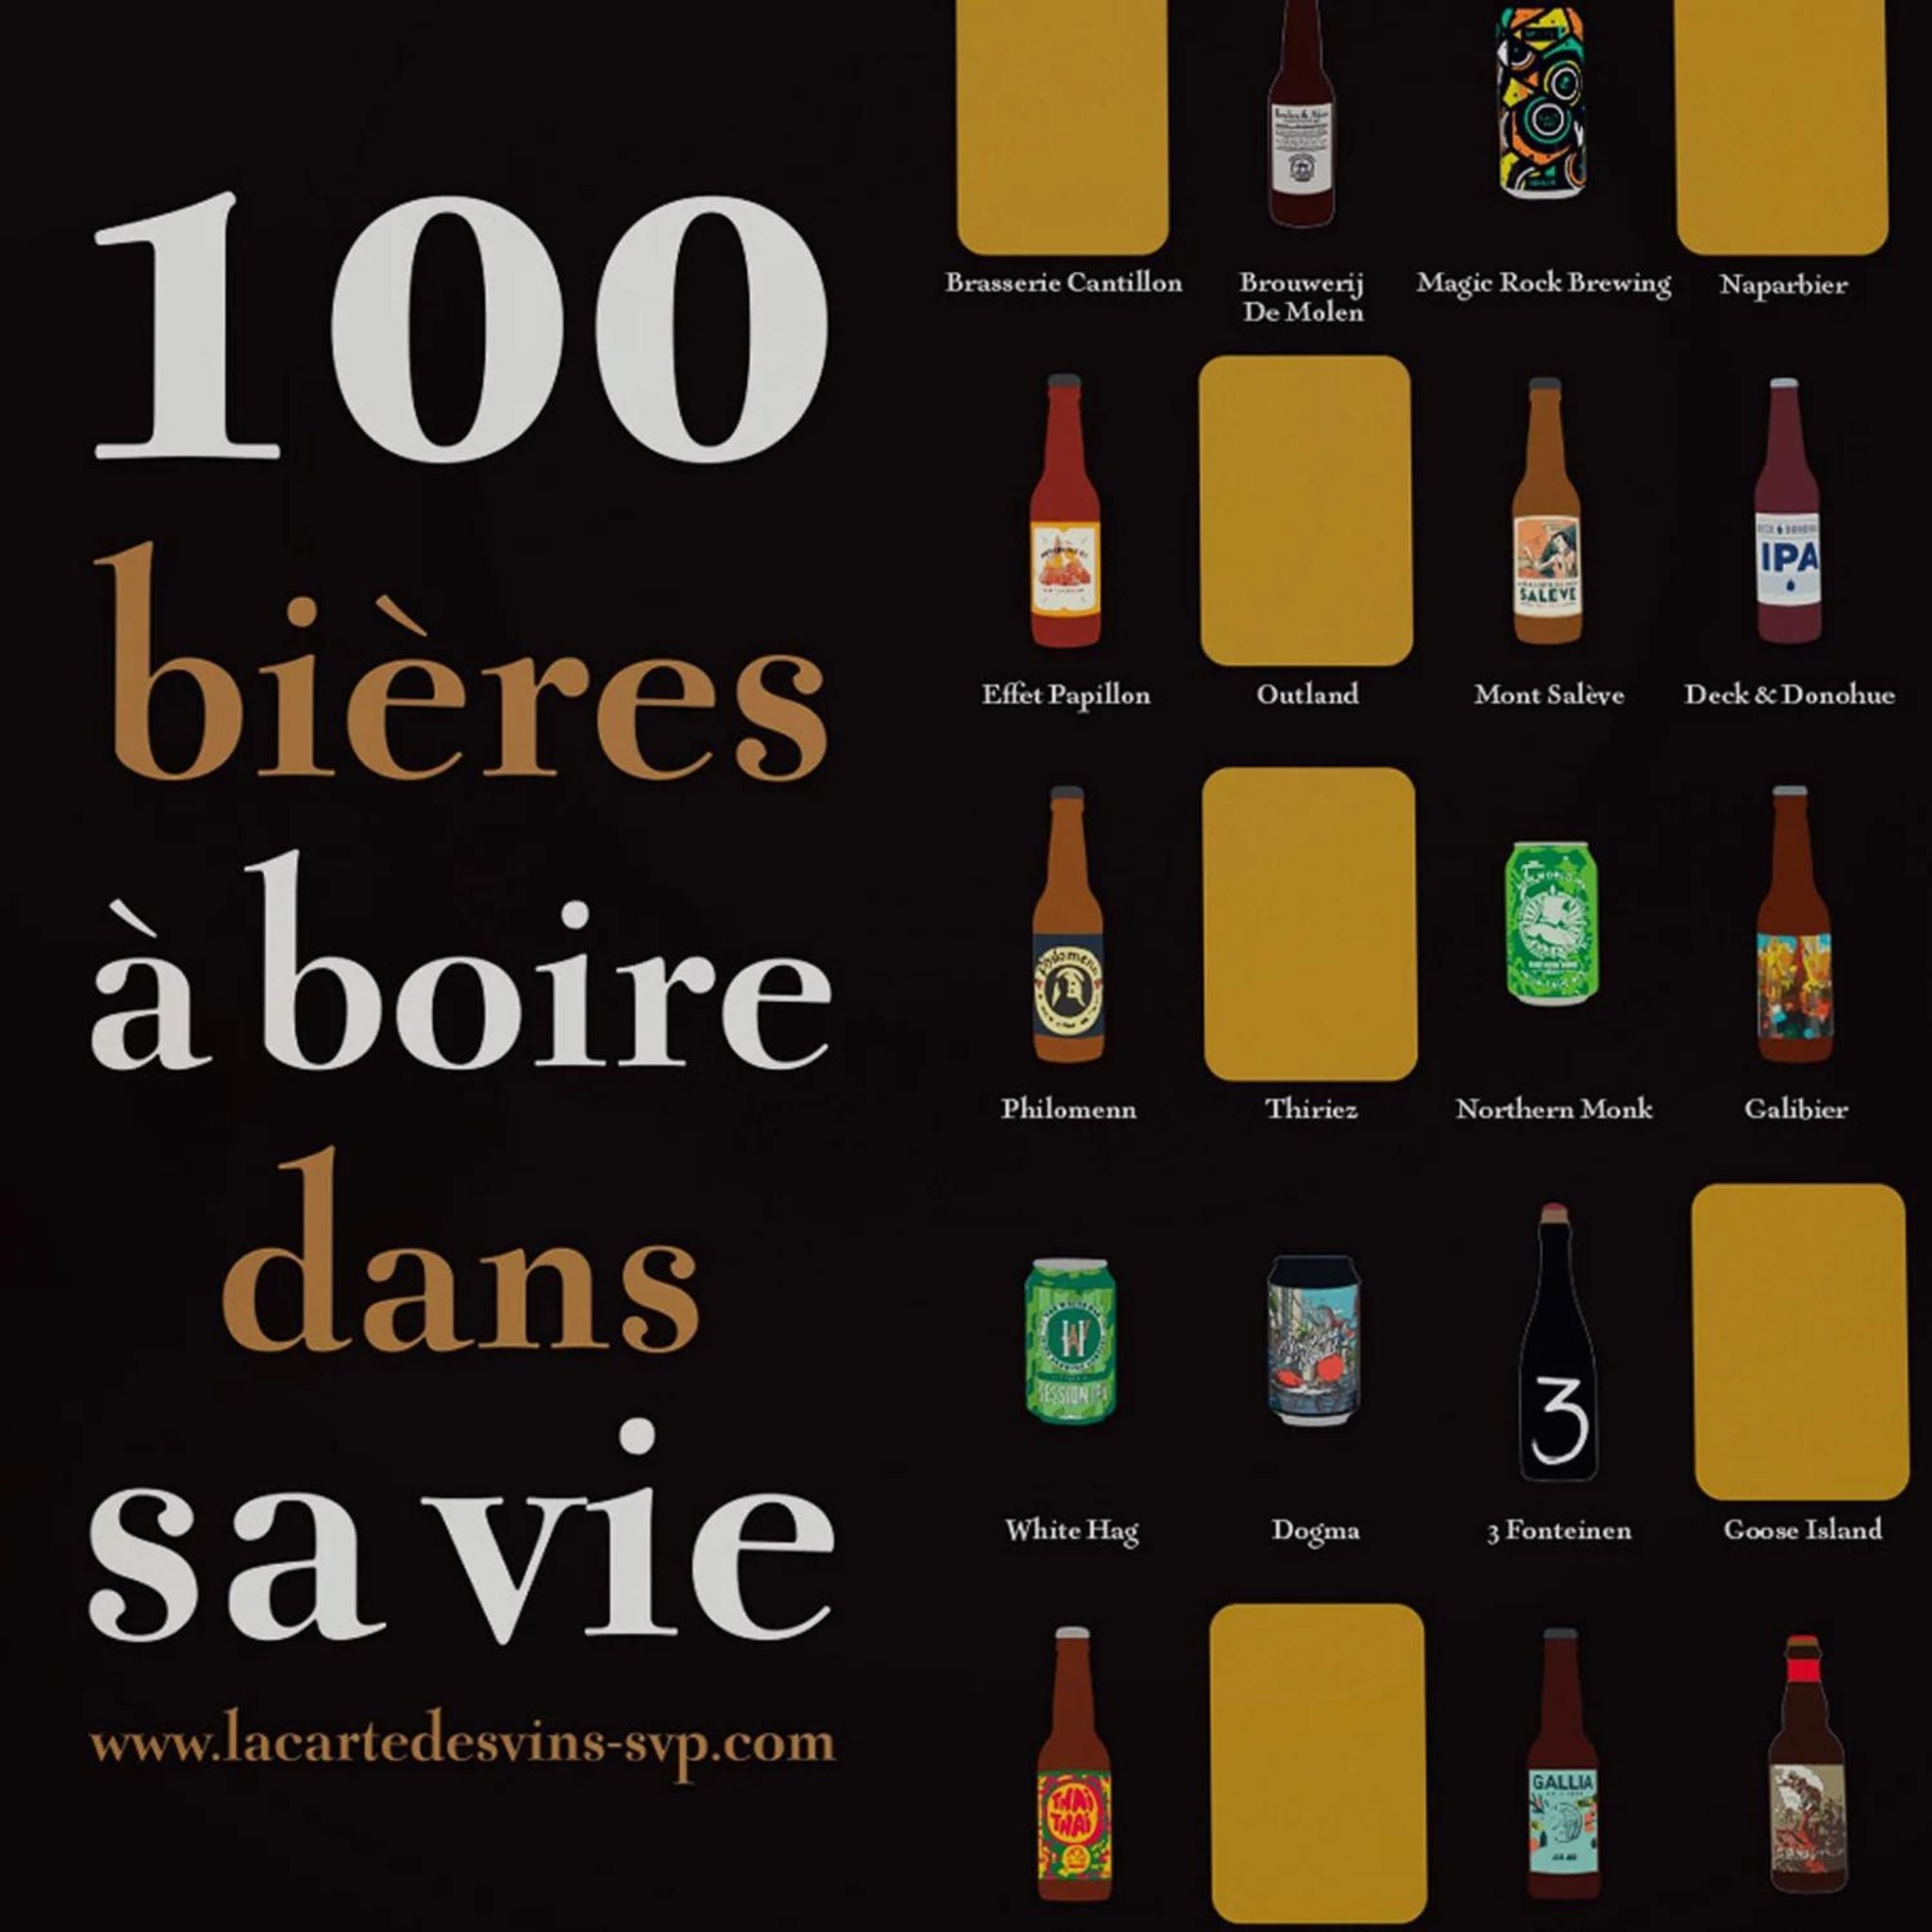 La carte des vins svp - 100 bières à boire dans sa vie